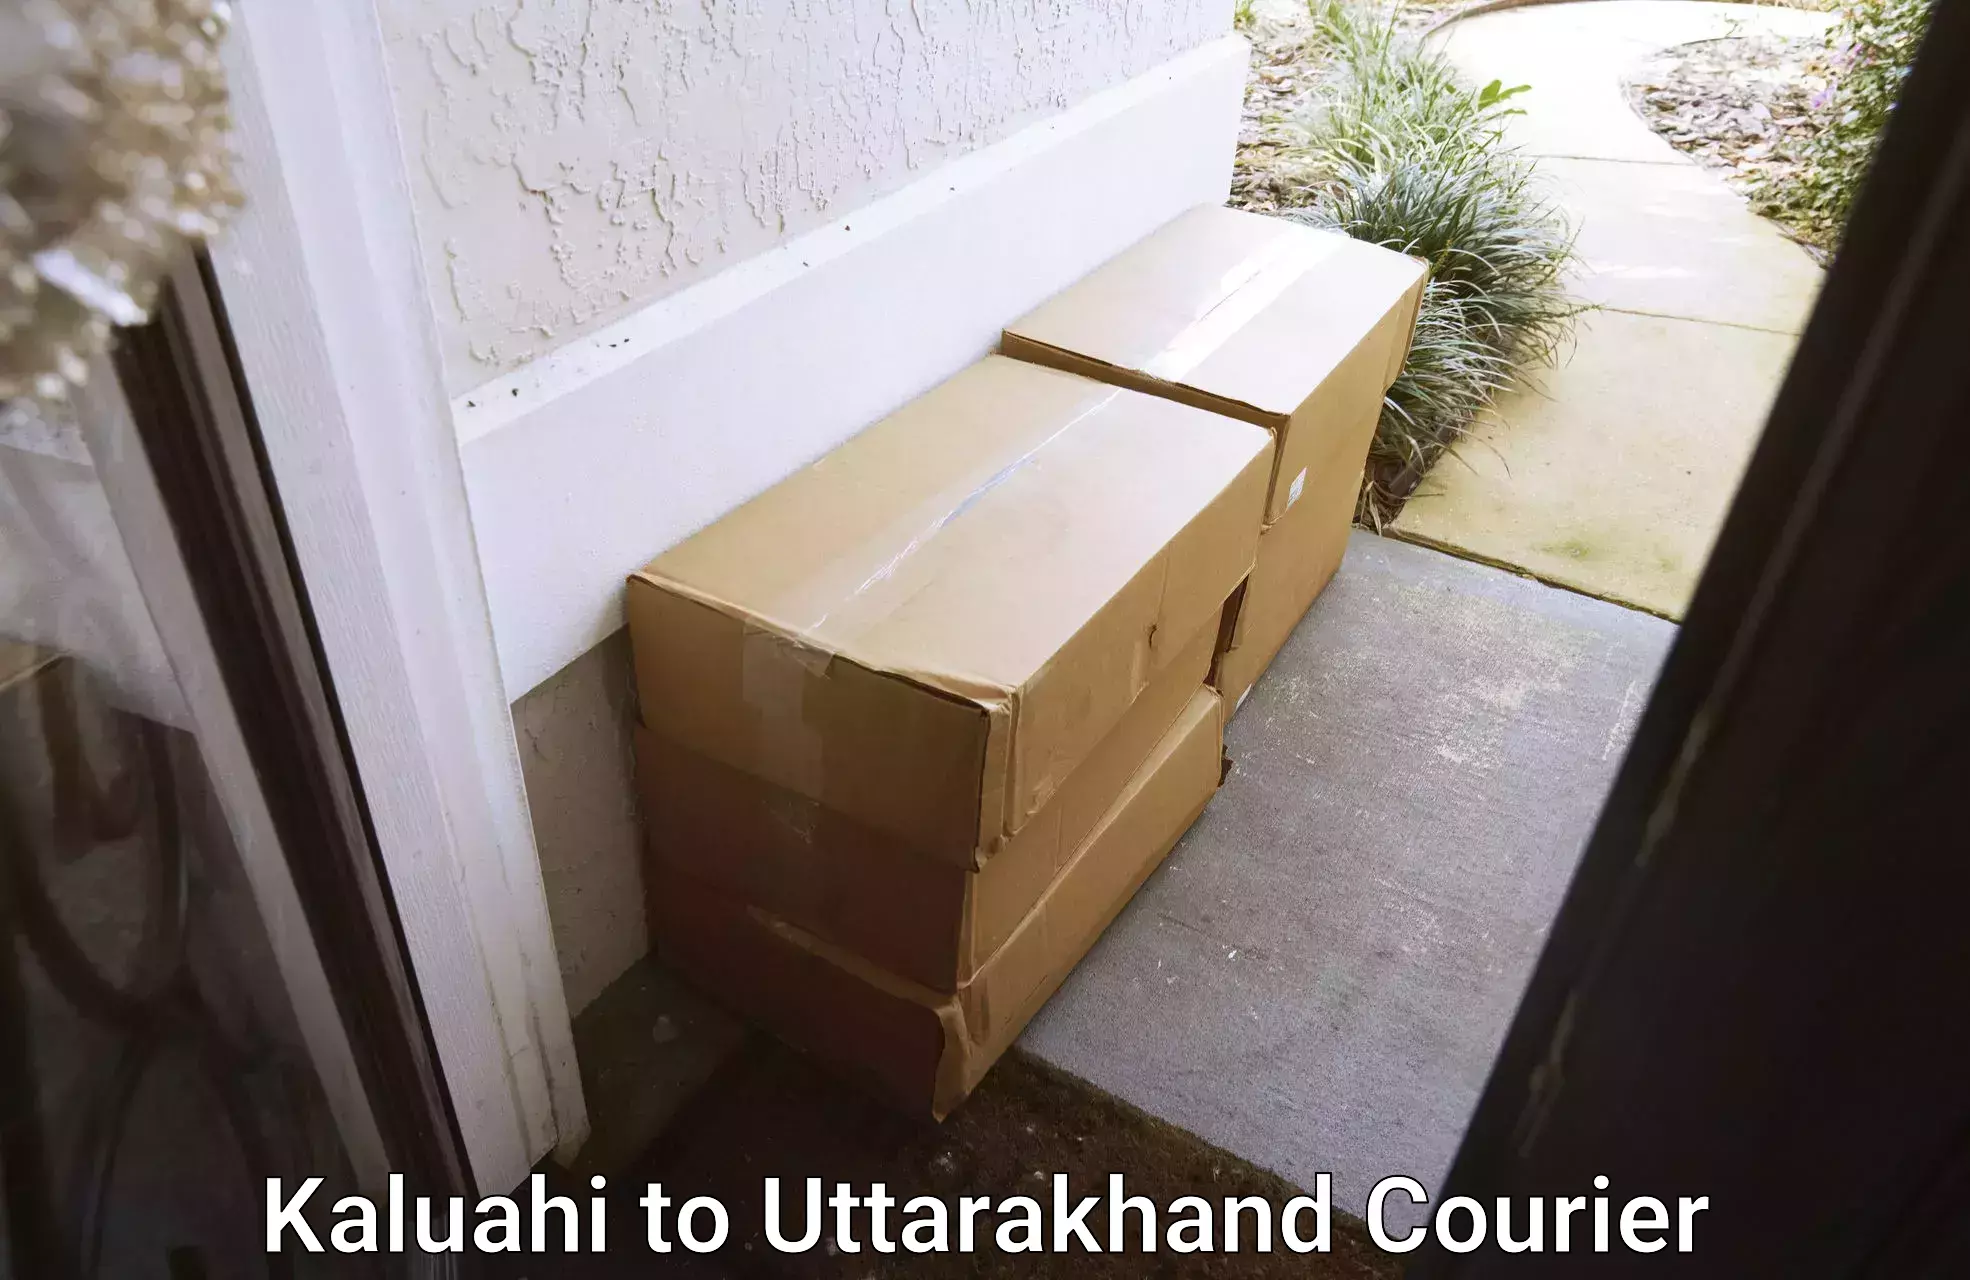 Home moving experts Kaluahi to Uttarakhand